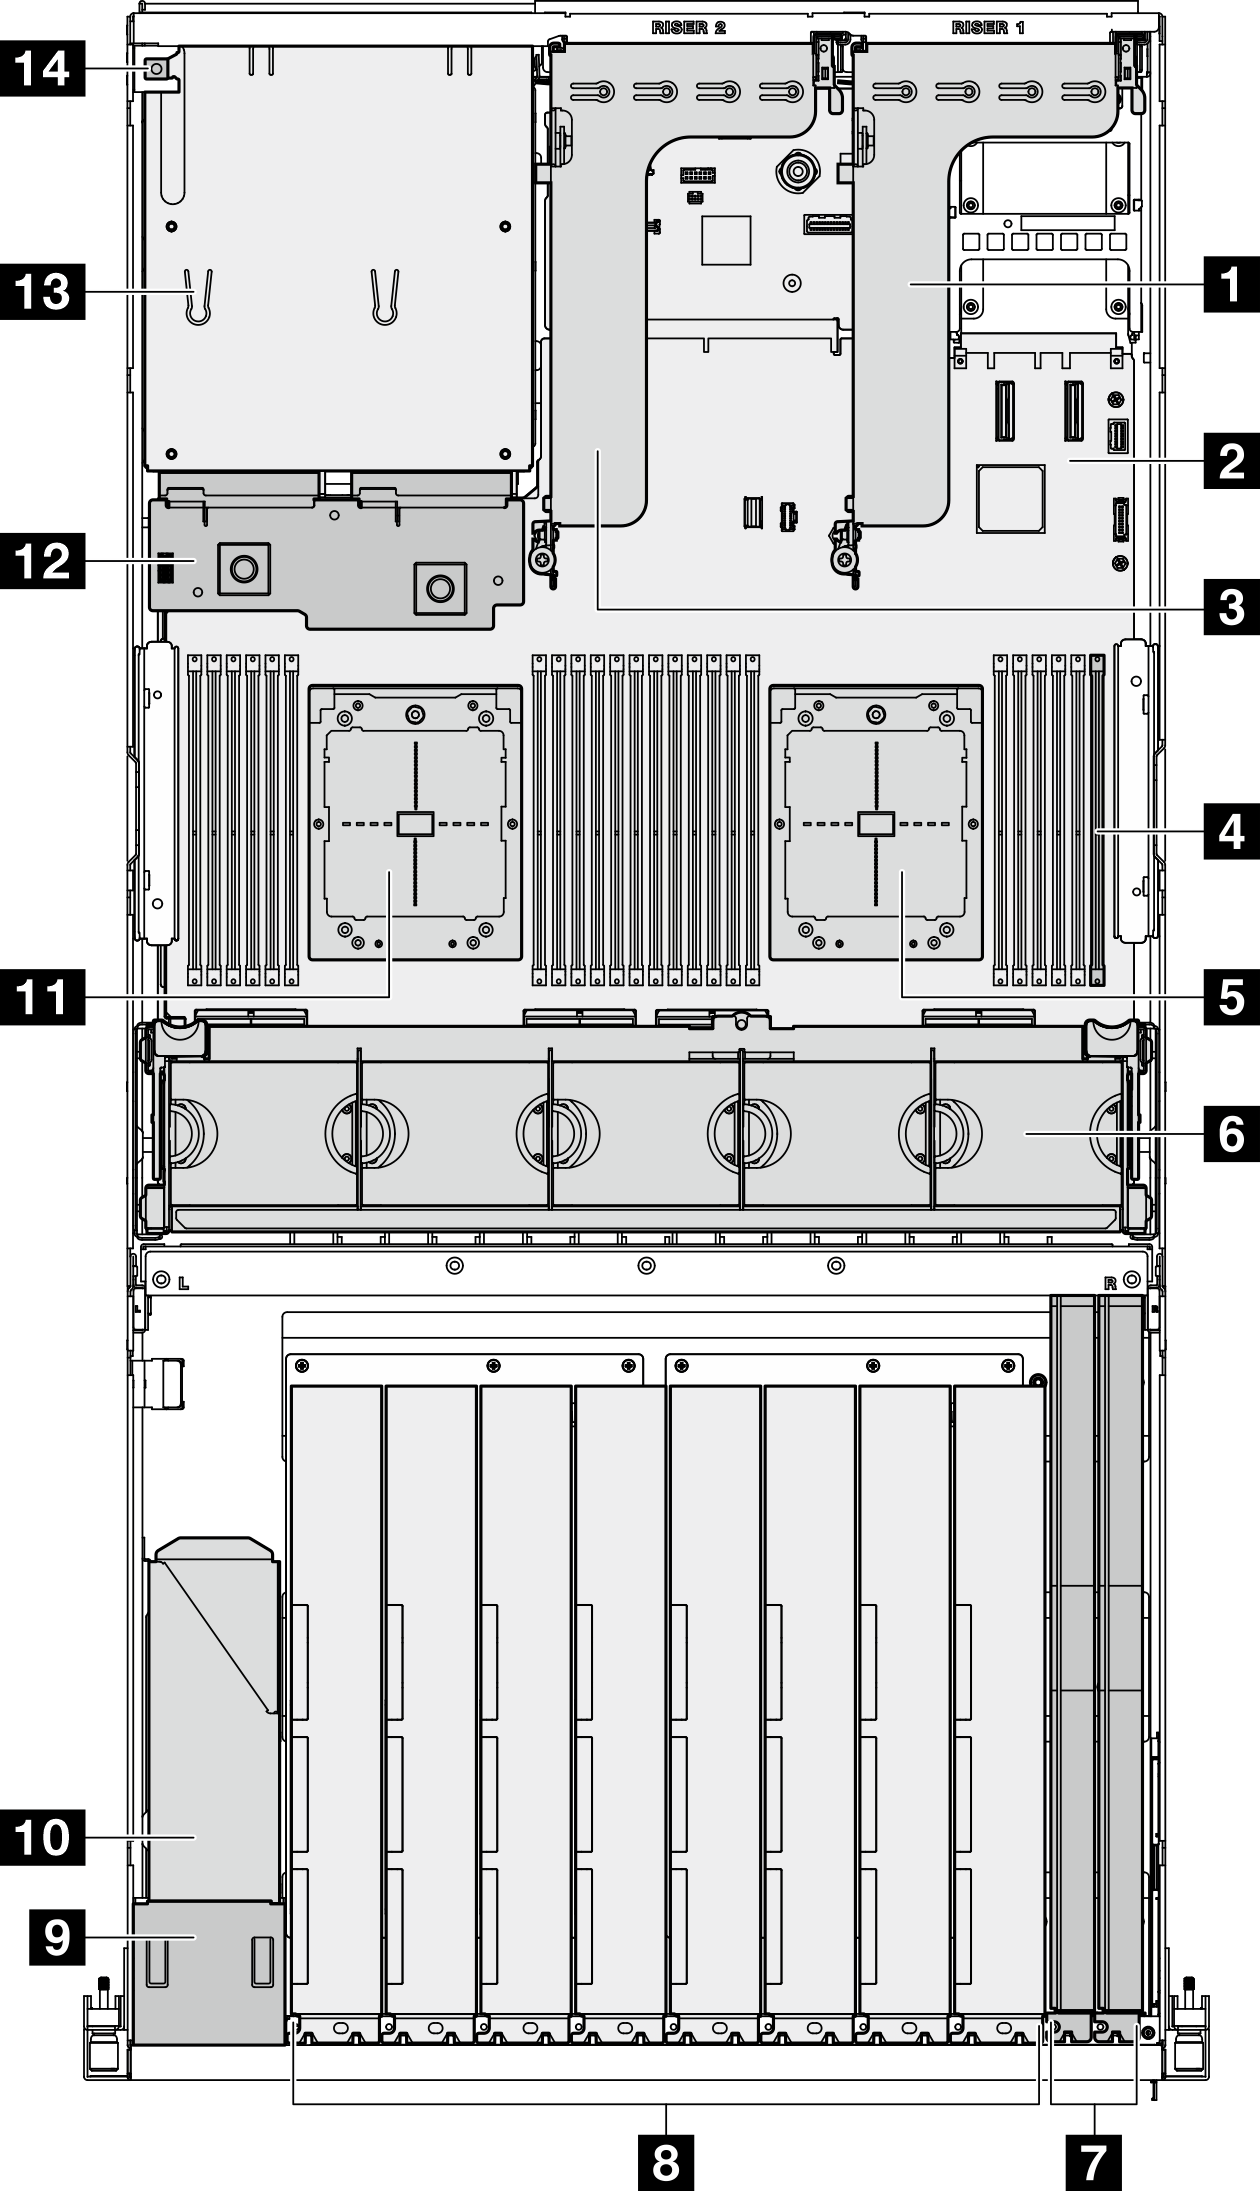 Top view of the Modèle de GPU 8-DW